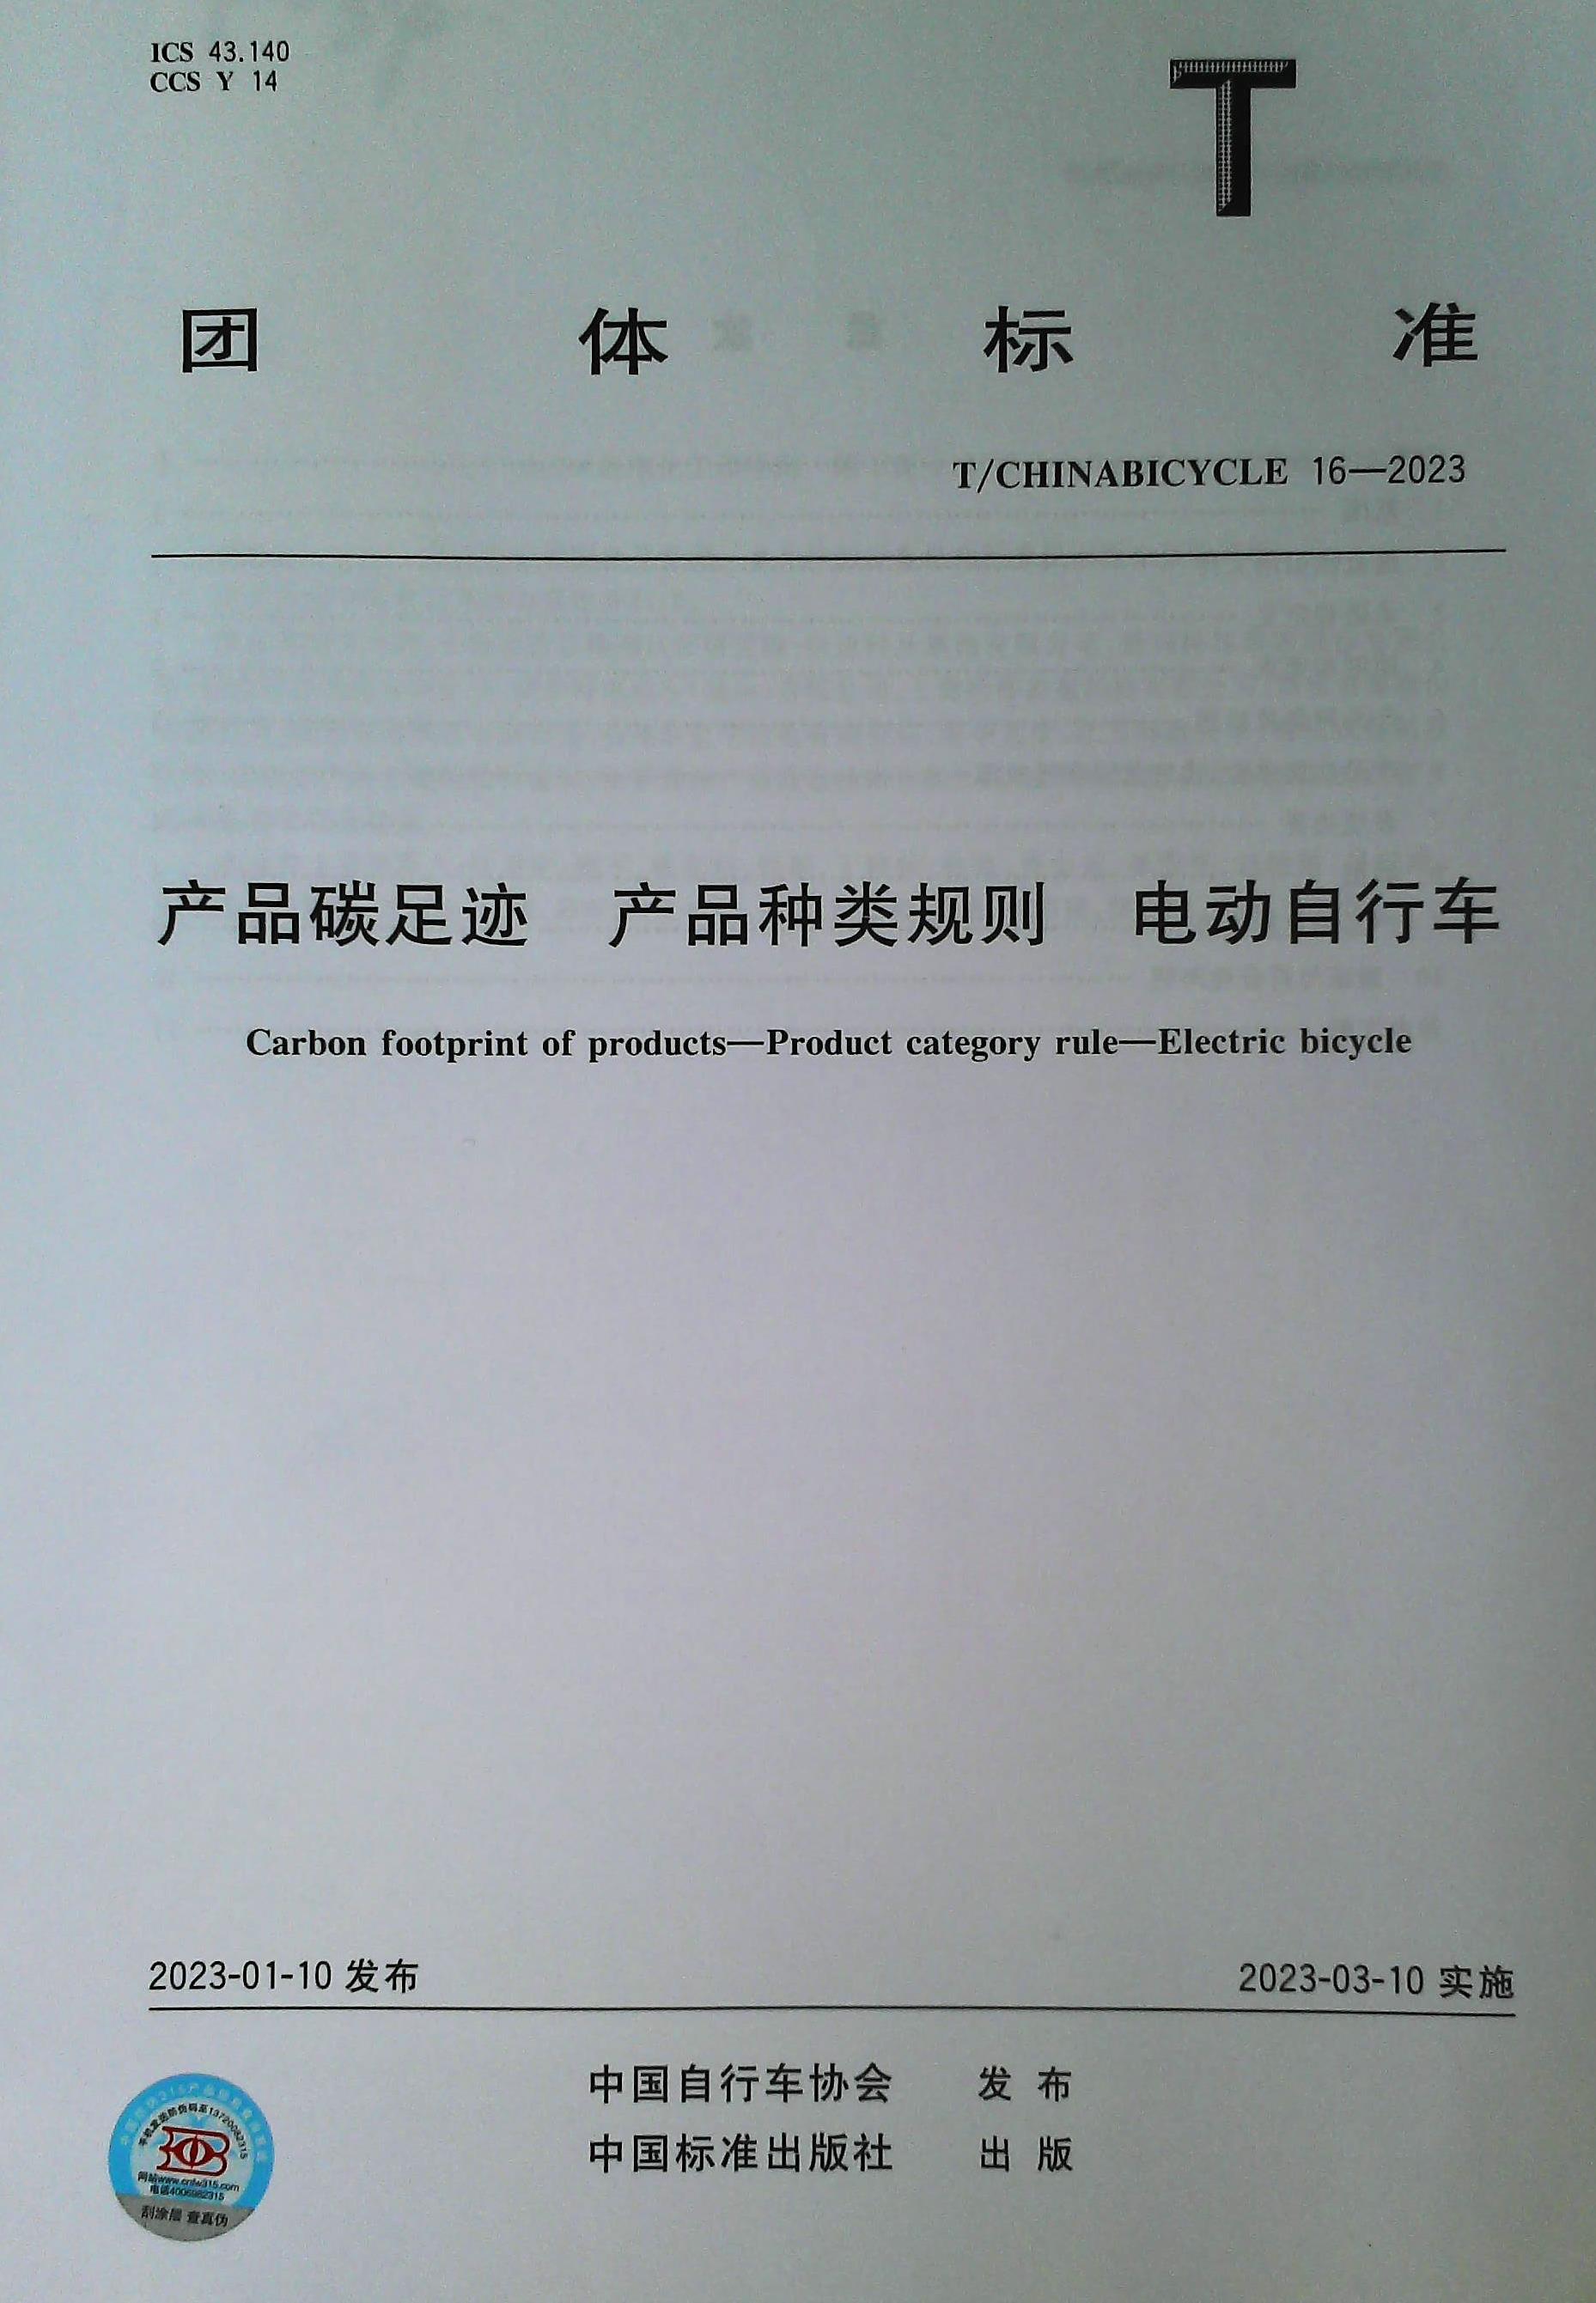 【正版现货】T/CHINABICYCLE 16-2023 产品碳足迹 产品种类规则 电动自行车